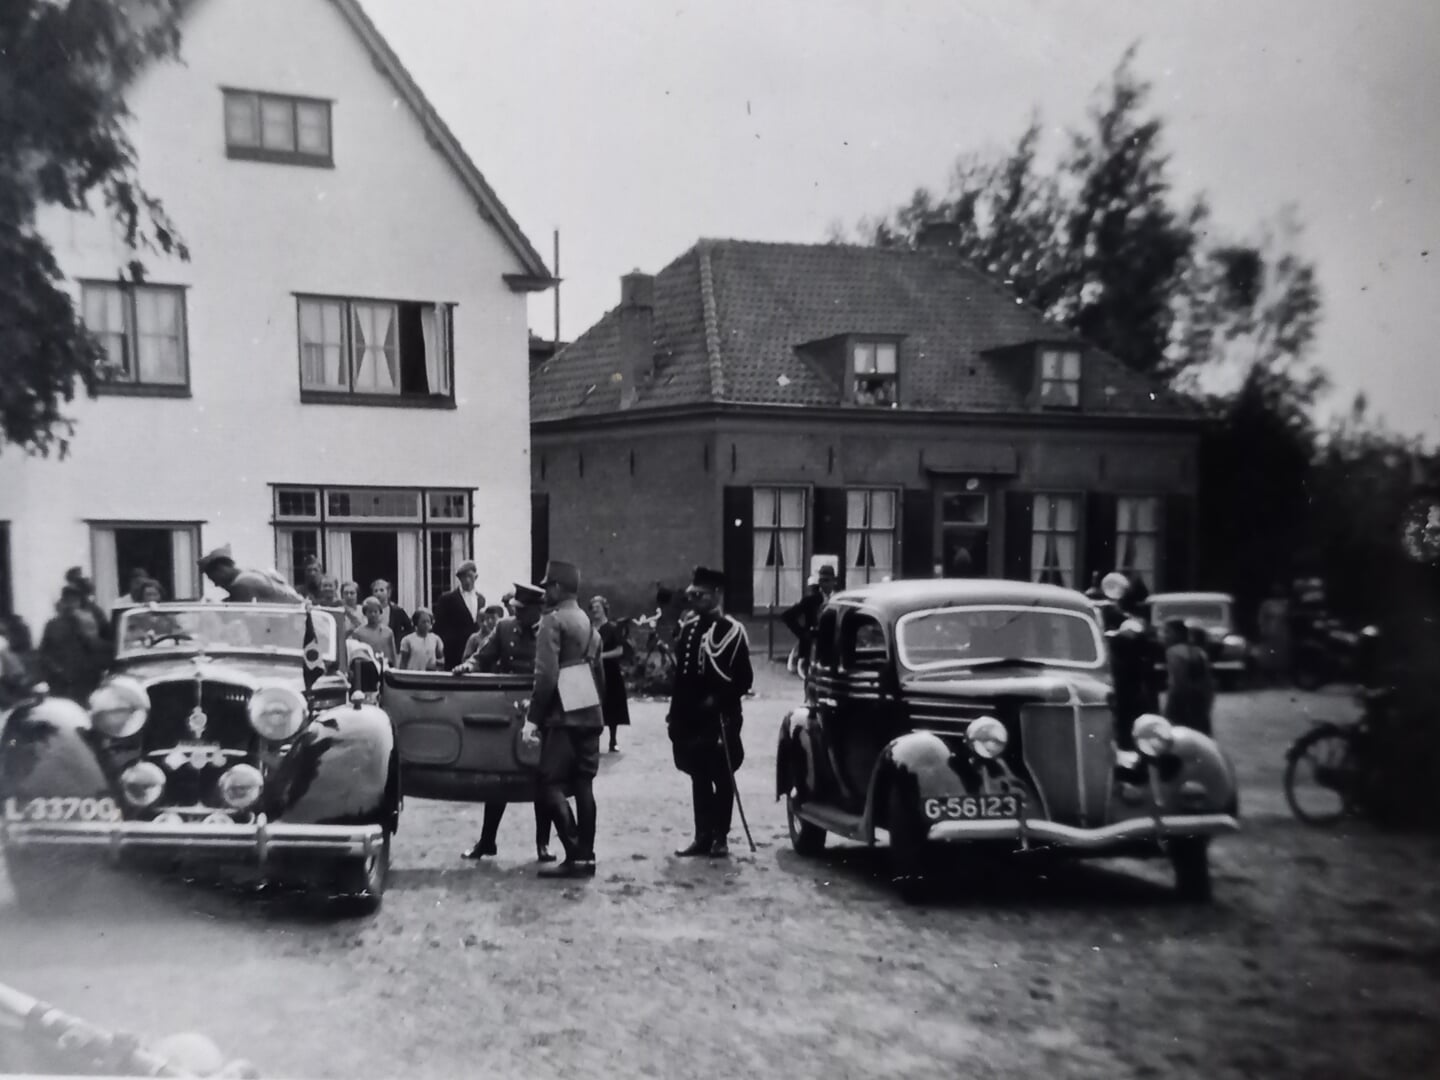 Bezoek van Prins Bernhard aan De Klomp in 1938 tijdens oefeningen van het leger. Hij stapt net in de auto.